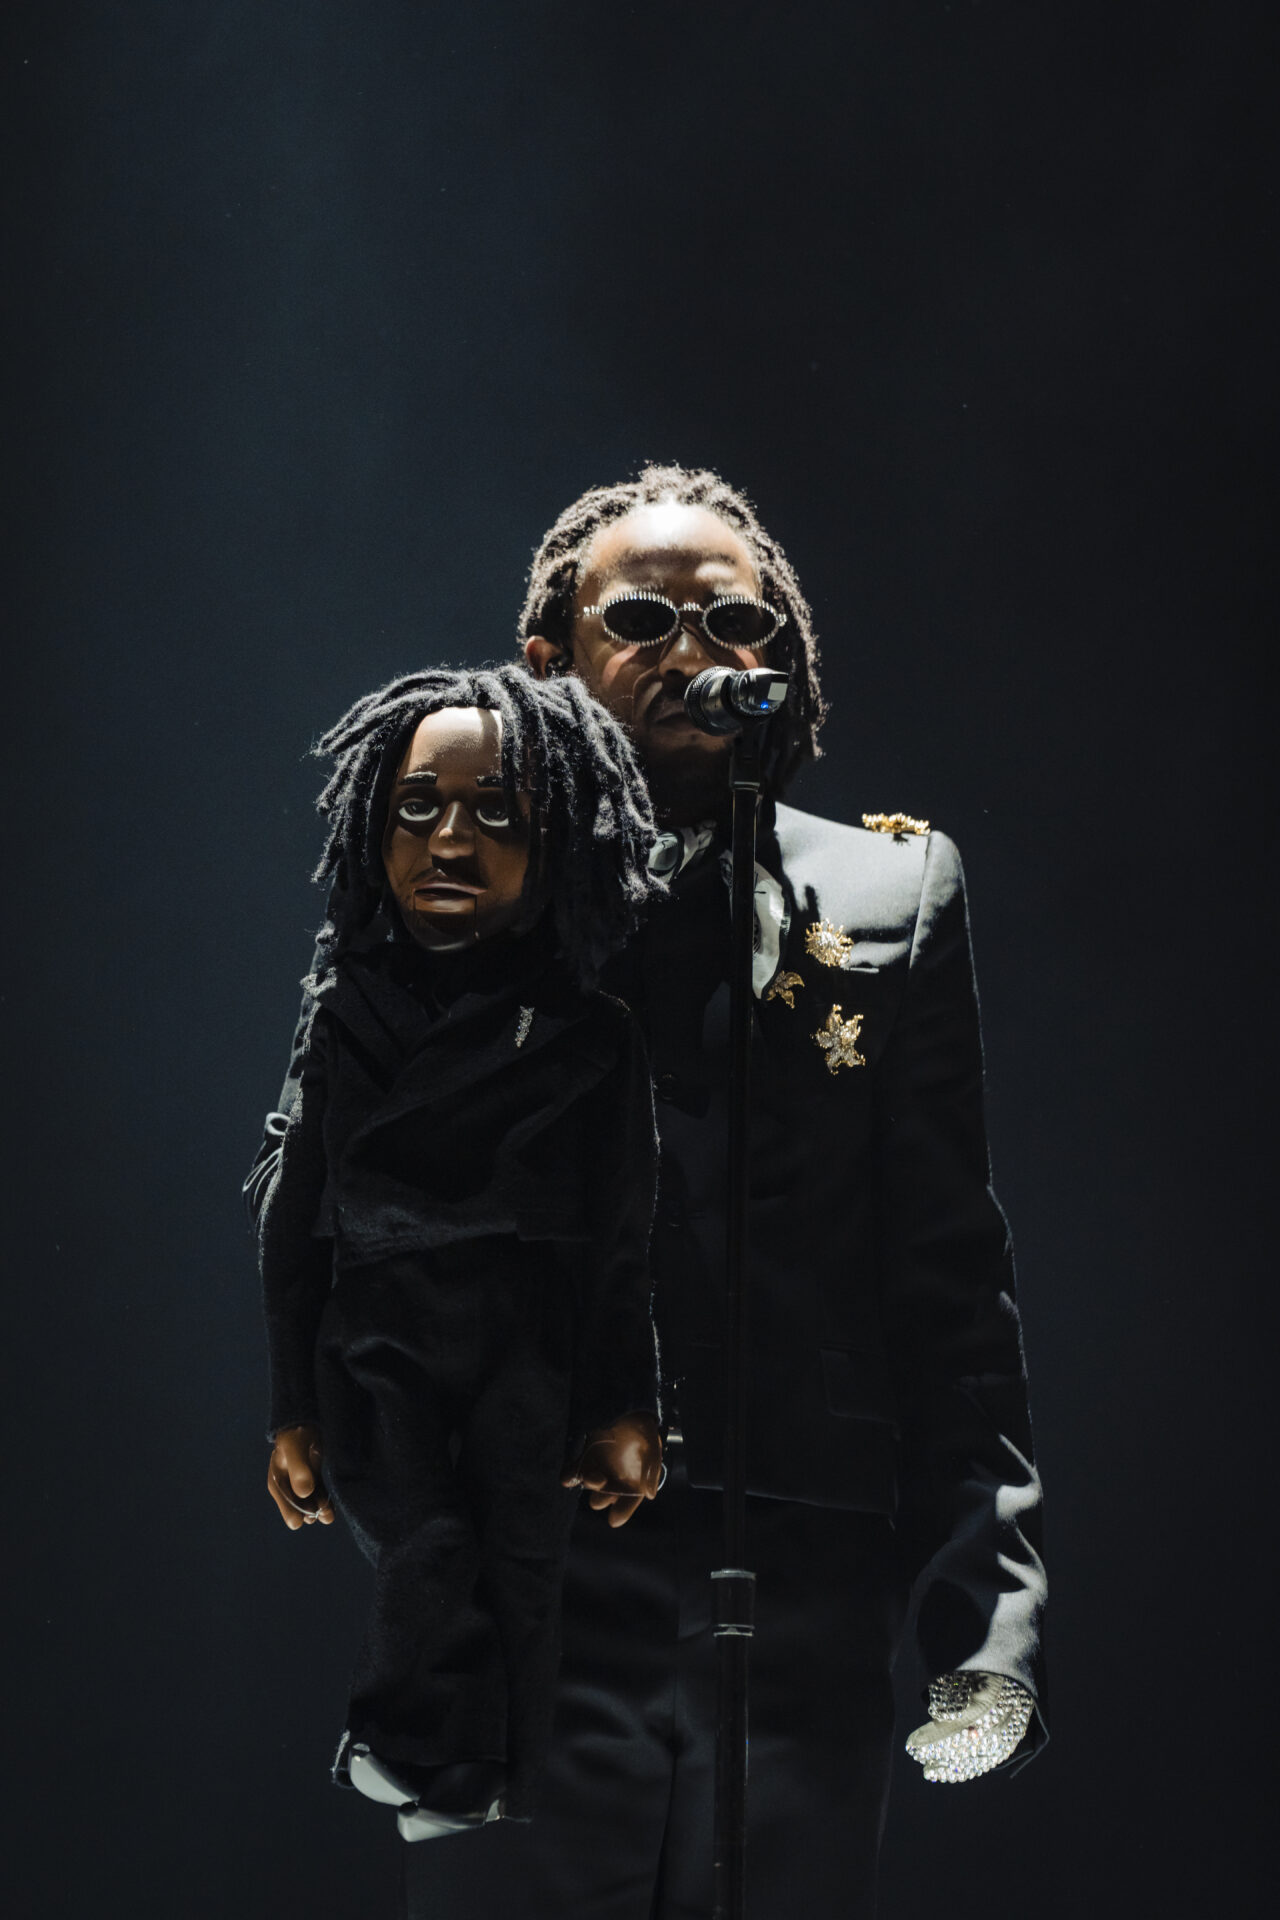 Kendrick Lamar's 'Big Steppers' Tour Mesmerizes Paris: Concert Review